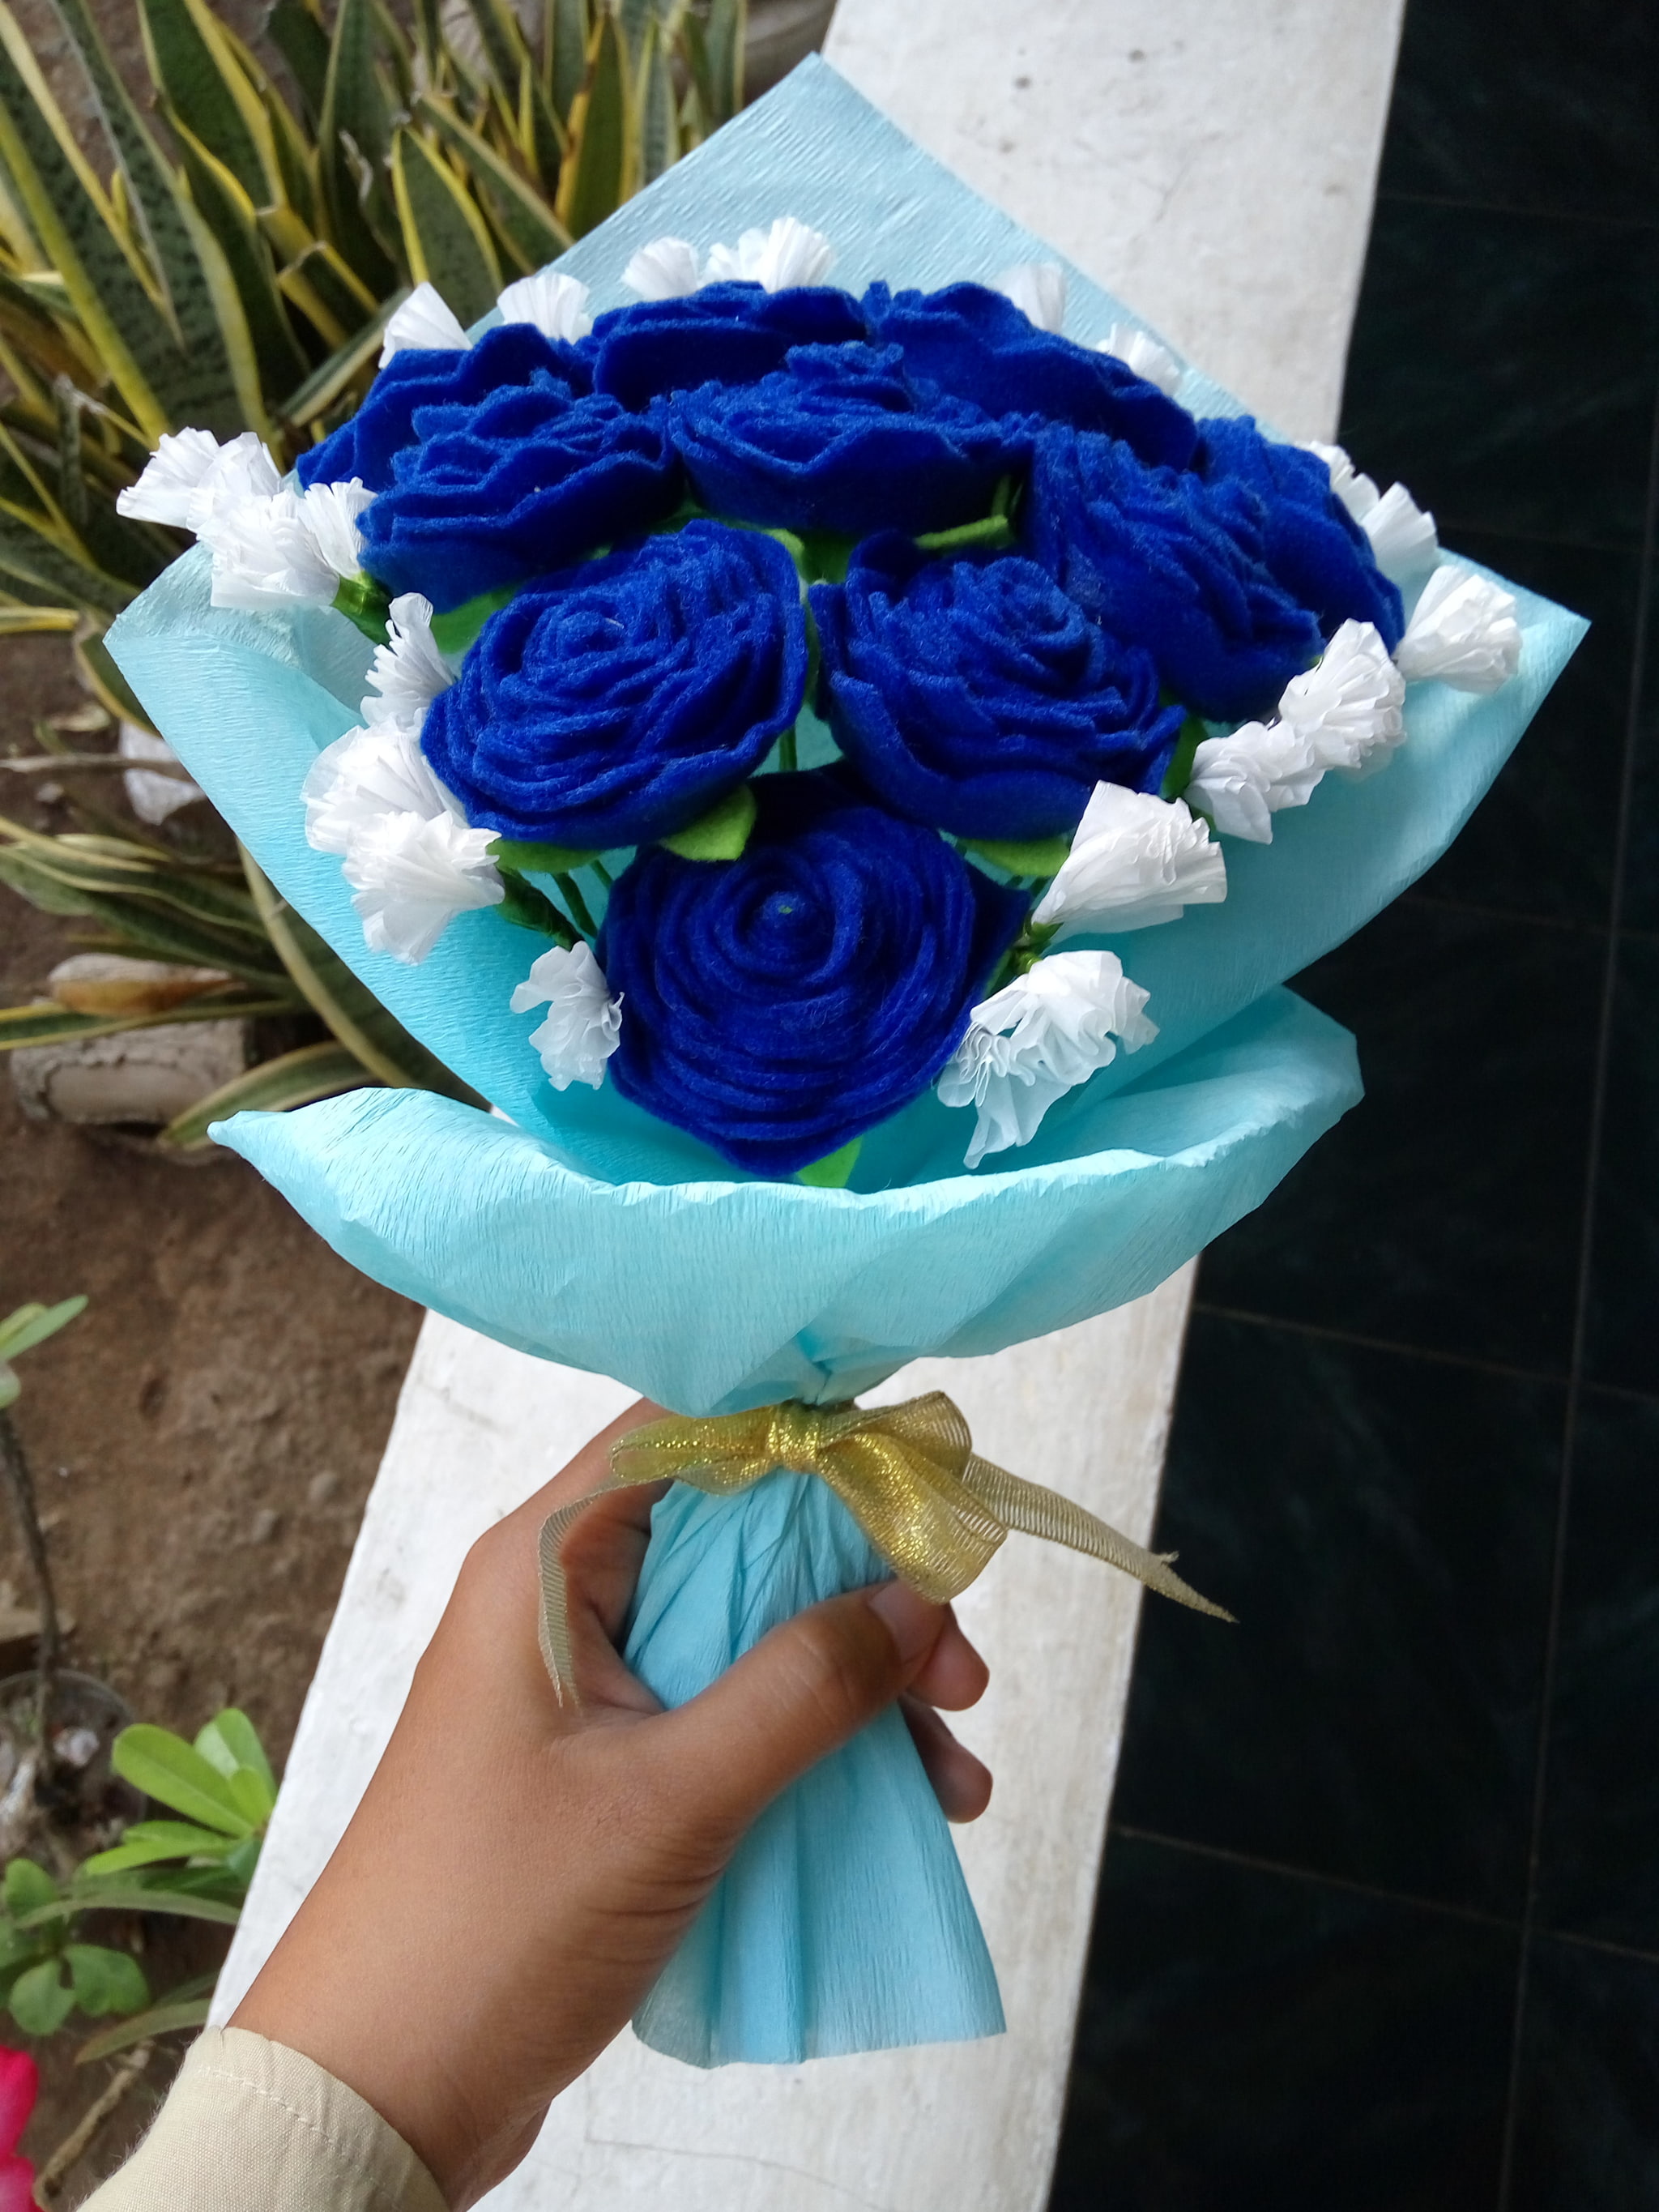 tapete biru dongker,blume,rose,blau,blaue rose,strauß